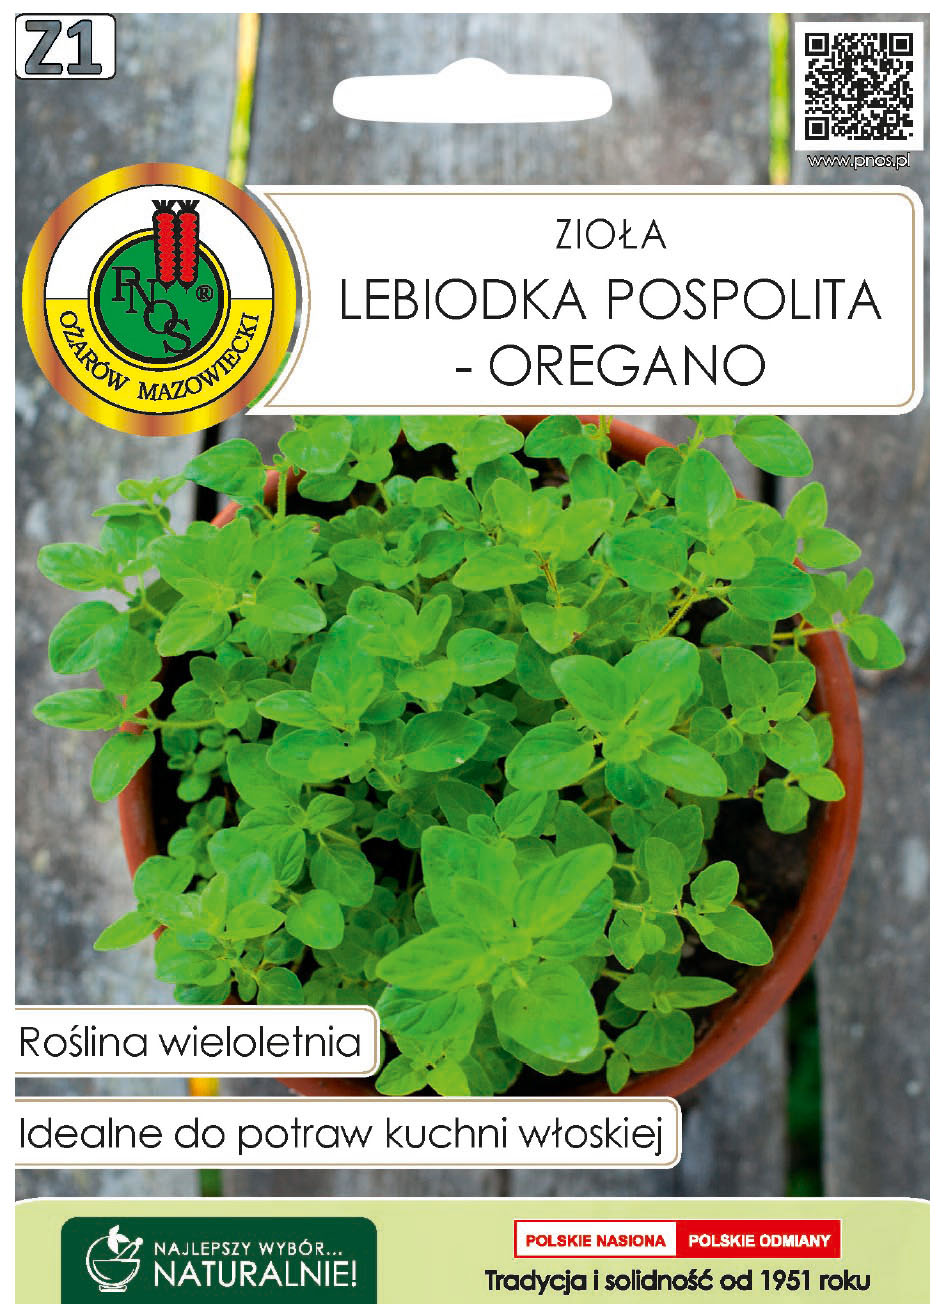 Lebiodka pospolita oregano to roślina wieloletnia, mrozoodporna, o pokładających się pędach.